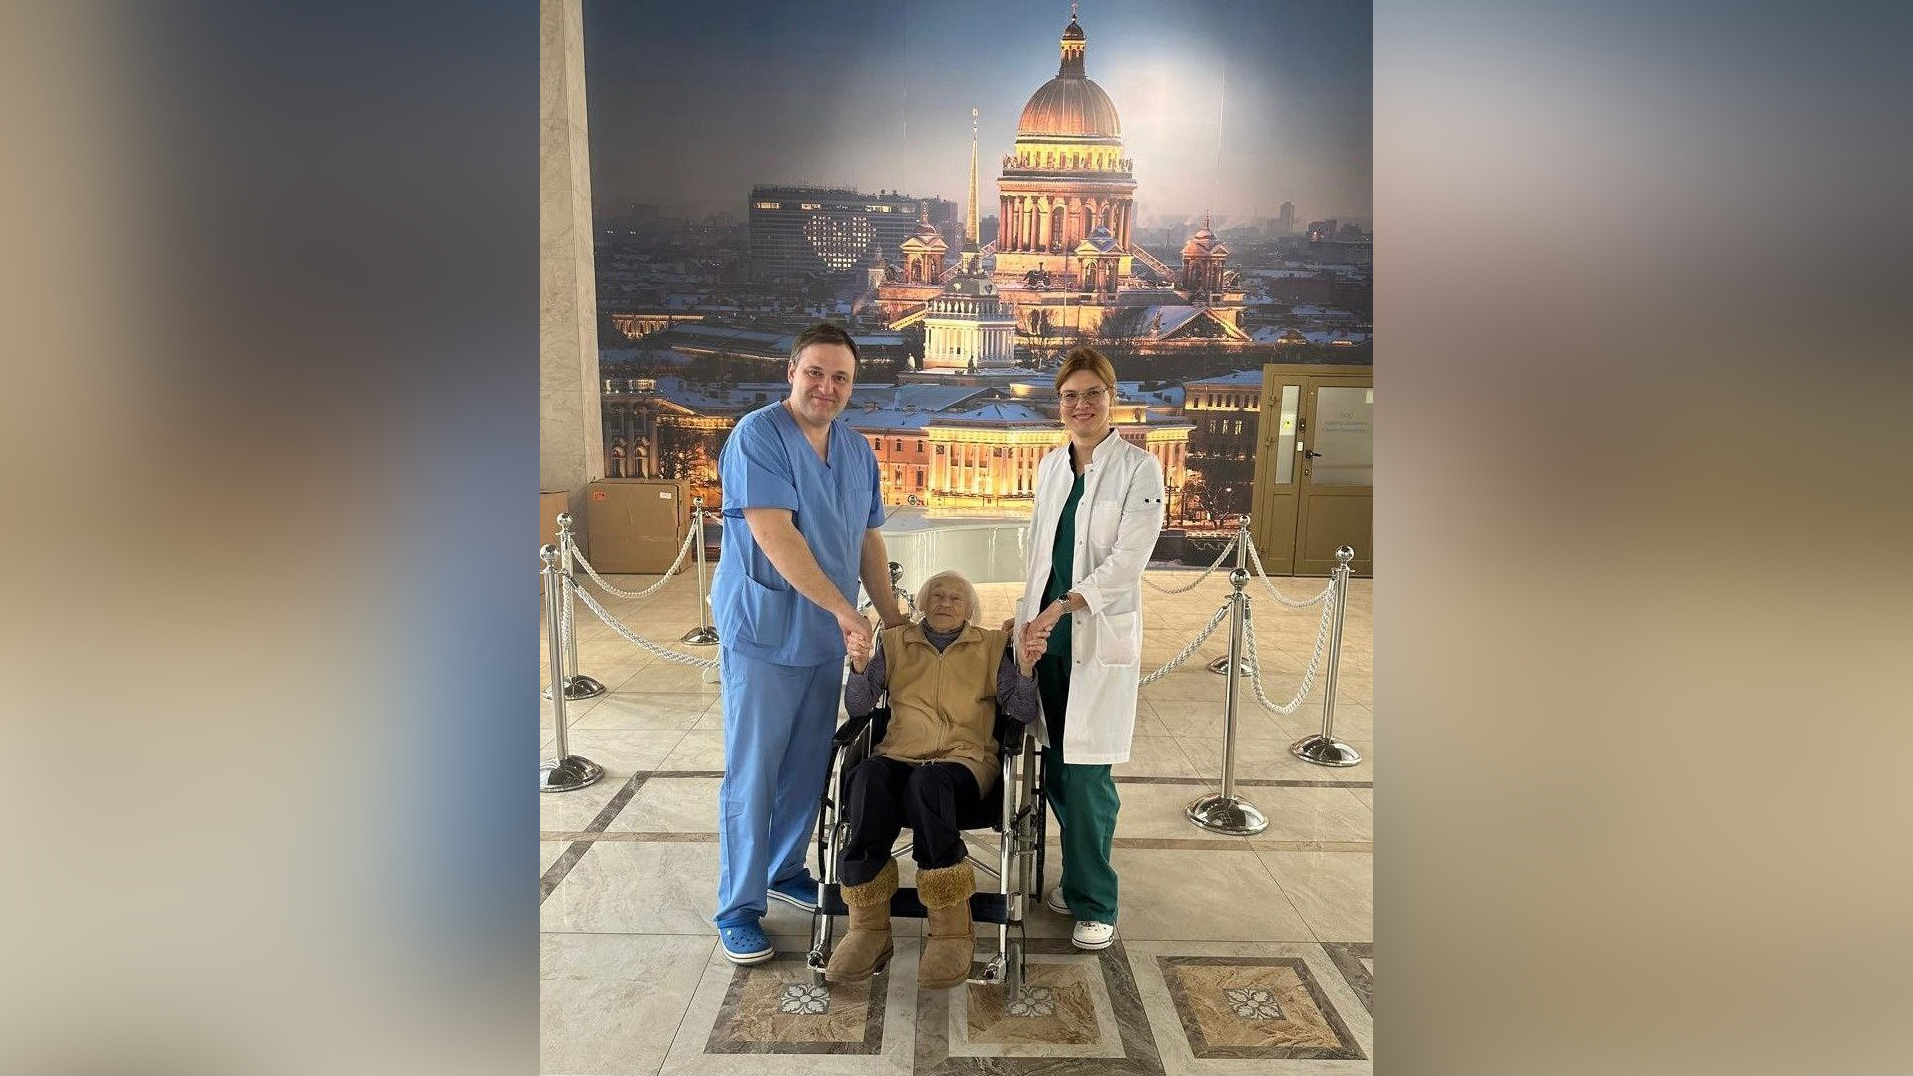 Блокадную учительницу Надежду Строгонову выписали из больницы 